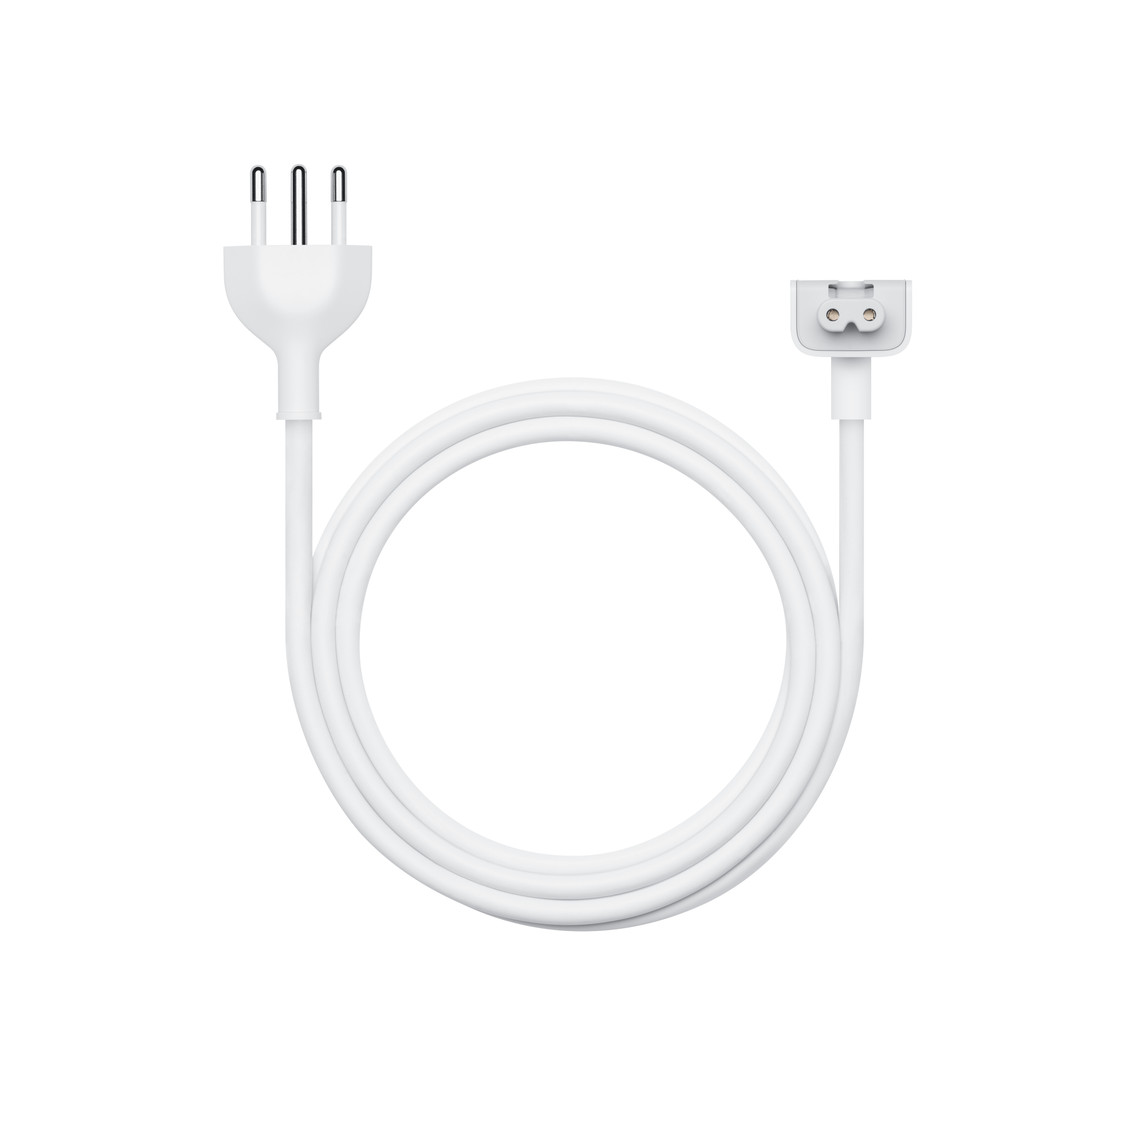 O cabo de extensão para adaptador de energia de 1,8 metro é uma extensão CA que aumenta o alcance do adaptador de energia Apple.